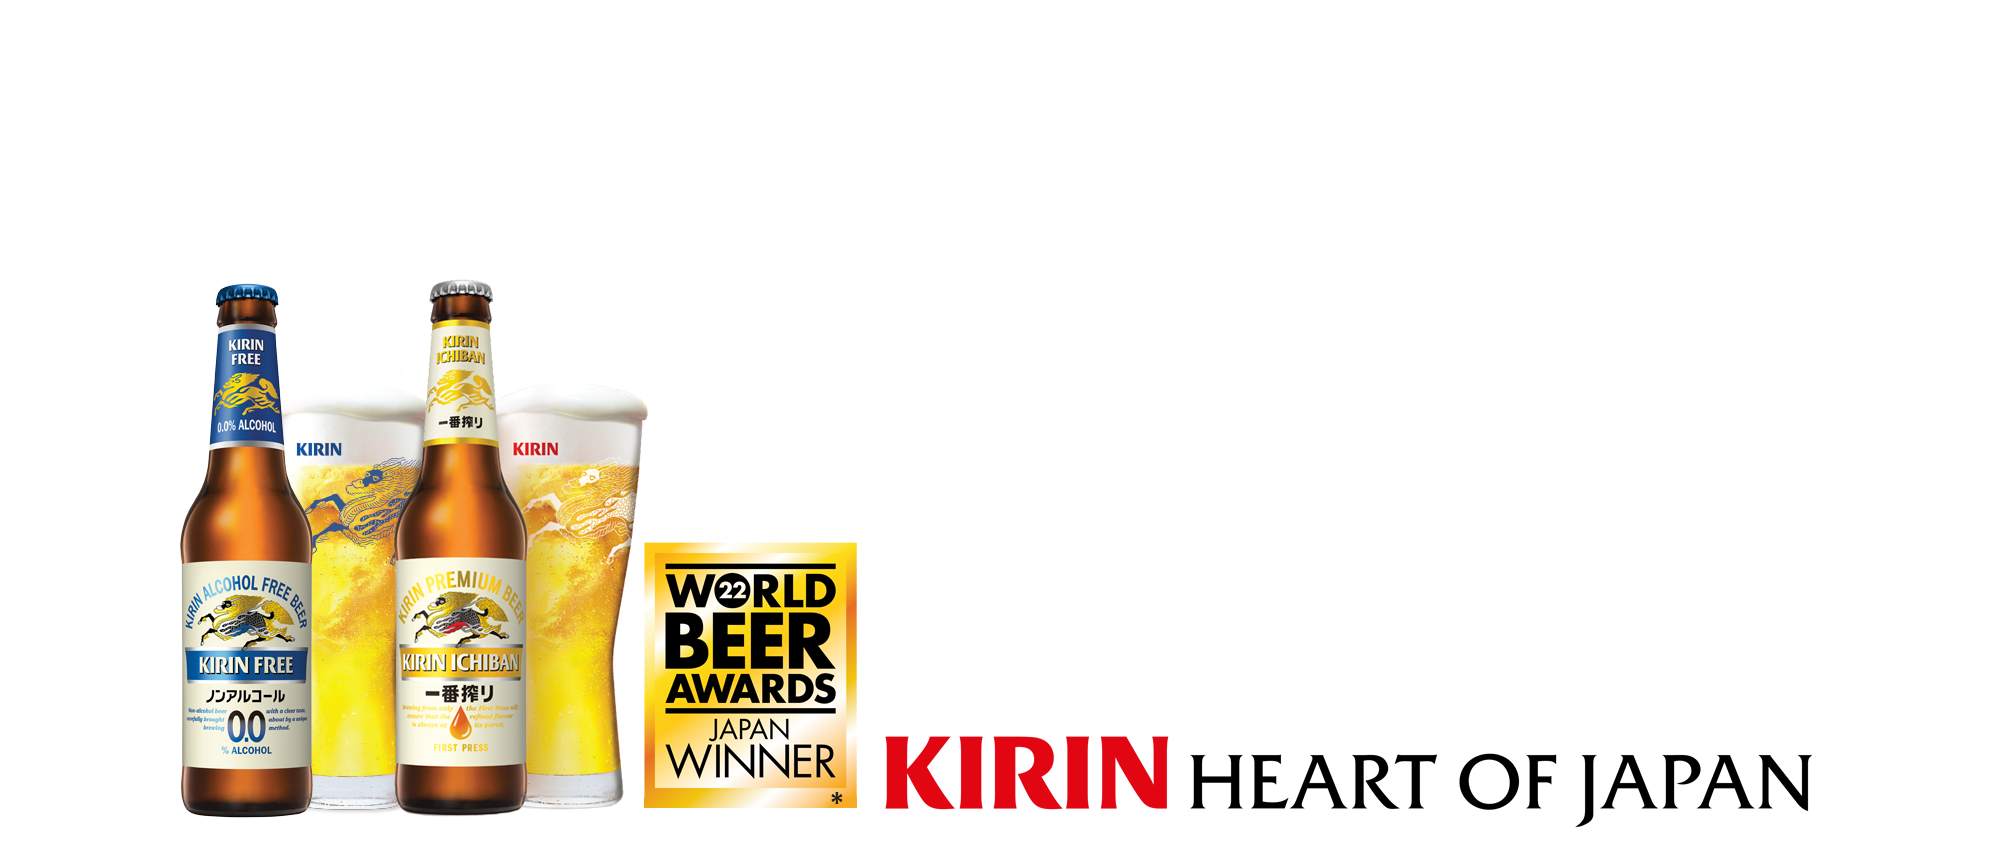 Kirin Japanese Beer